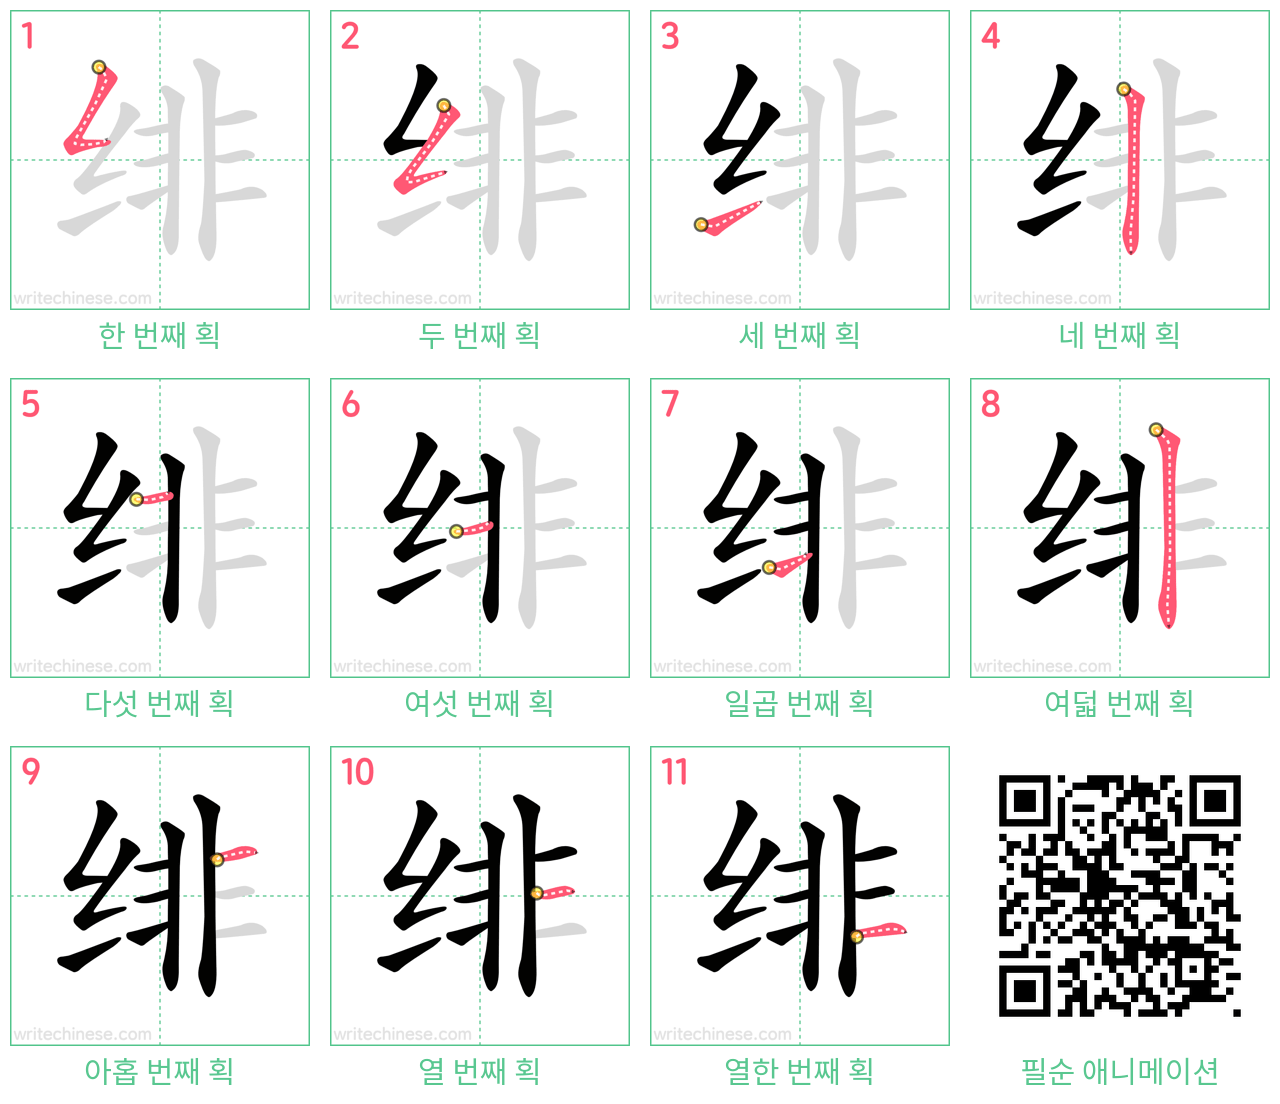 绯 step-by-step stroke order diagrams